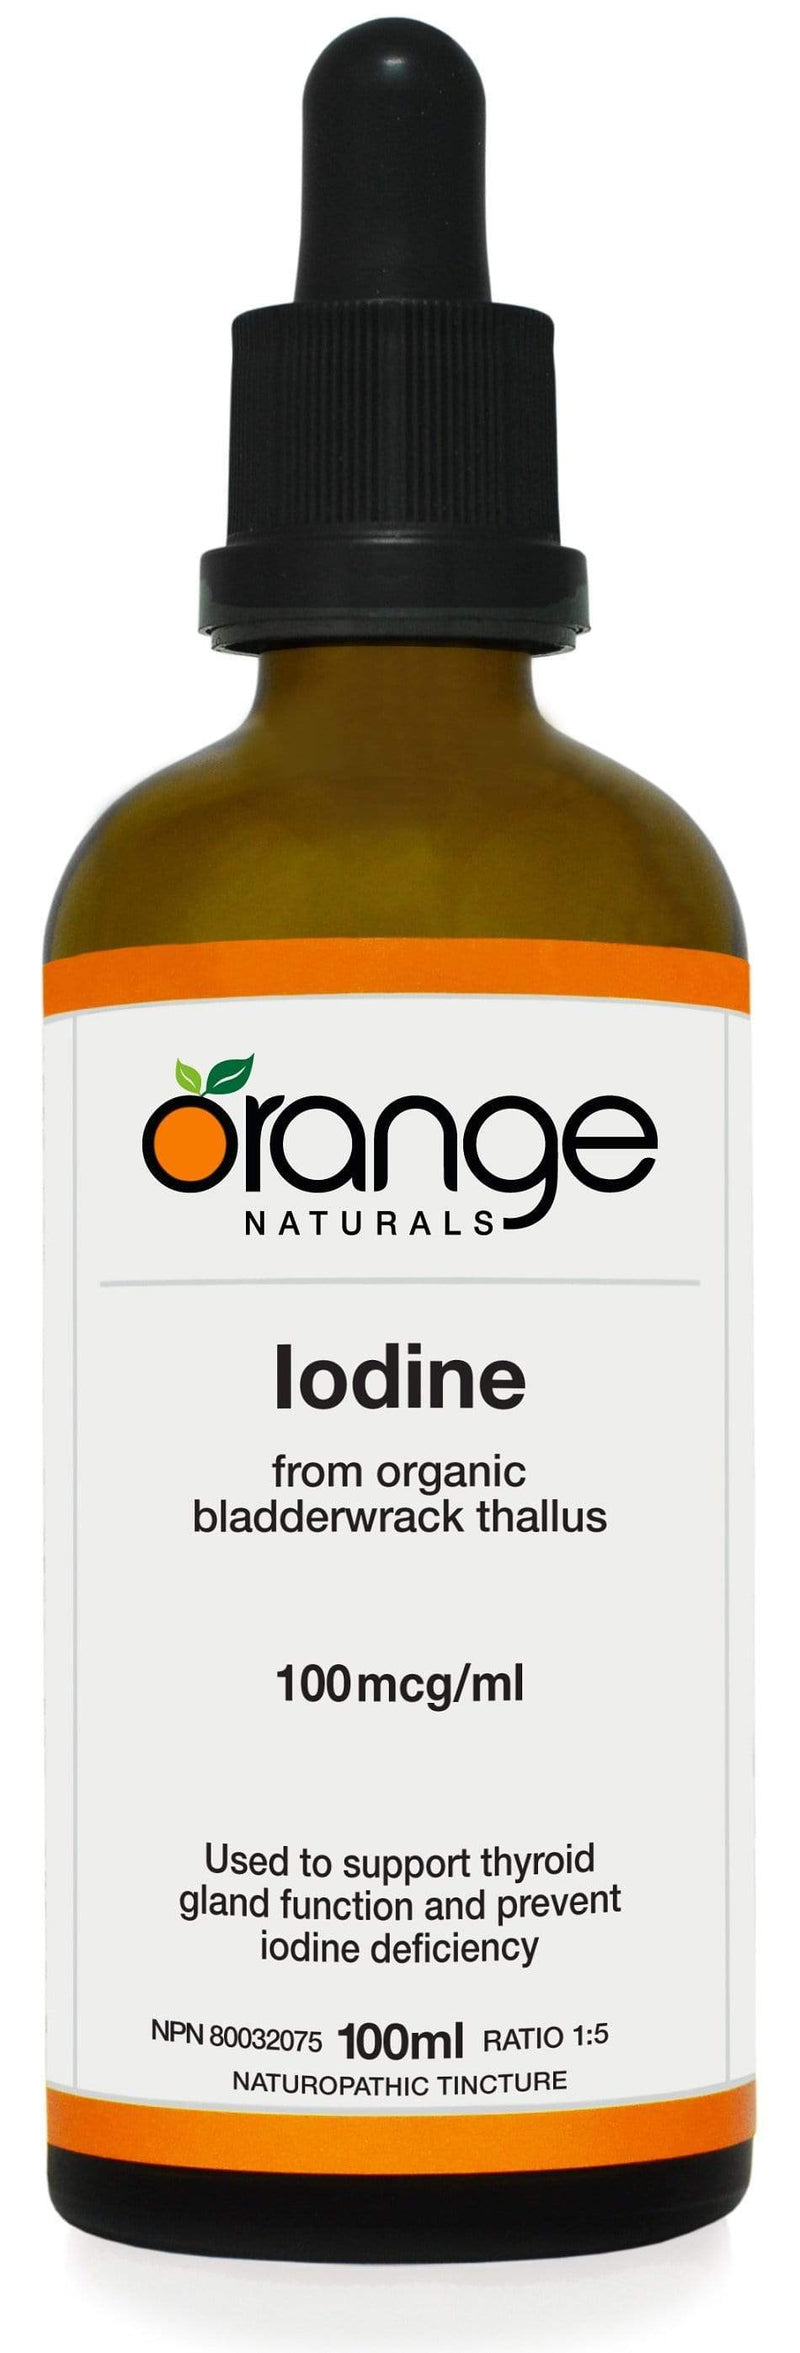 Orange Naturals Iodine